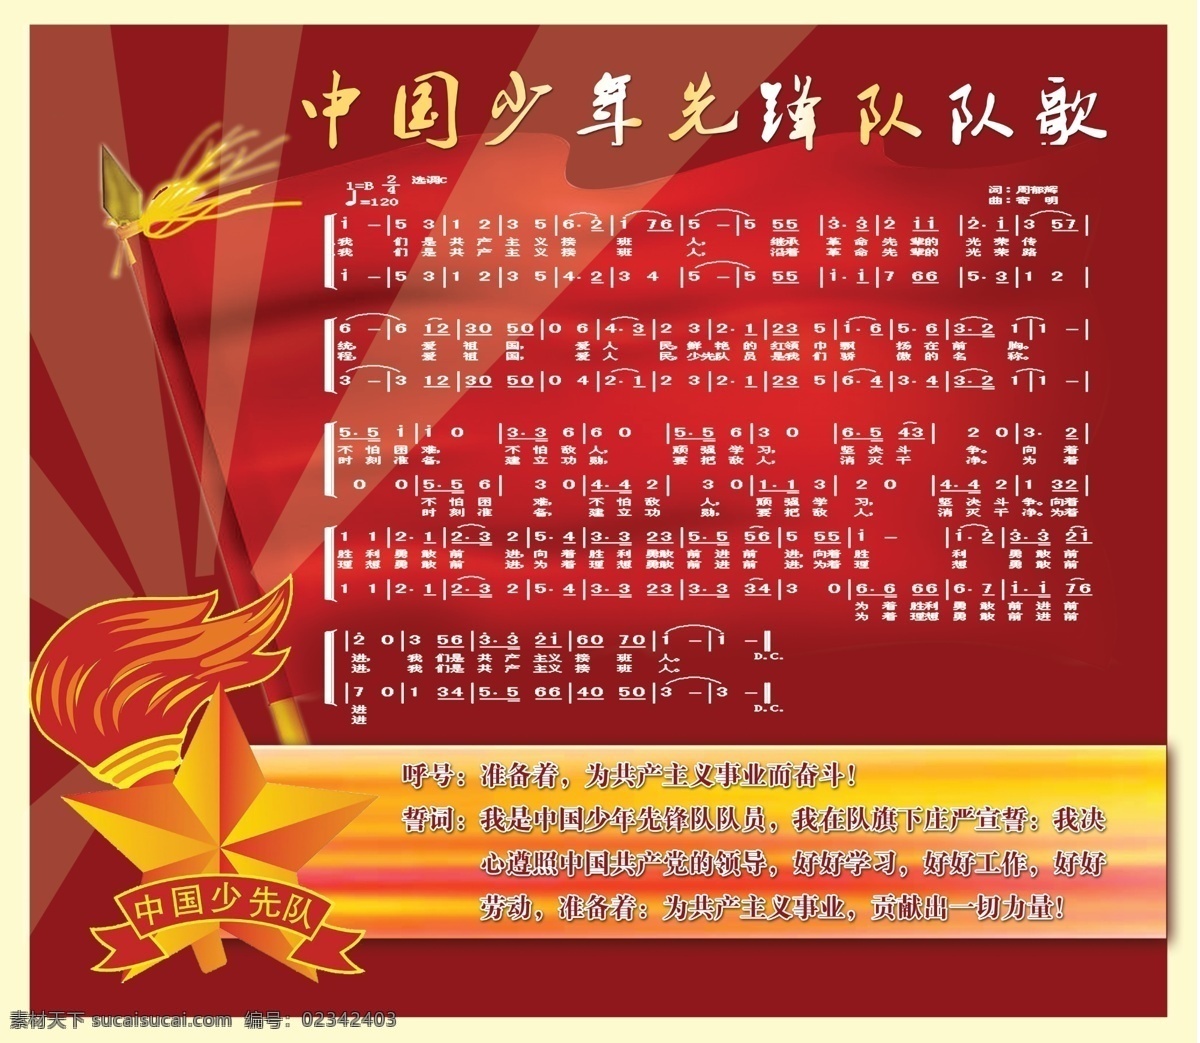 中国少年先锋队 队歌 展板 少先队 红旗 队徽 誓词 呼号 共产主义 红色 革命 红歌 平面设计 广告 模板 分层 dip 广告设计模板 源文件 展板模板